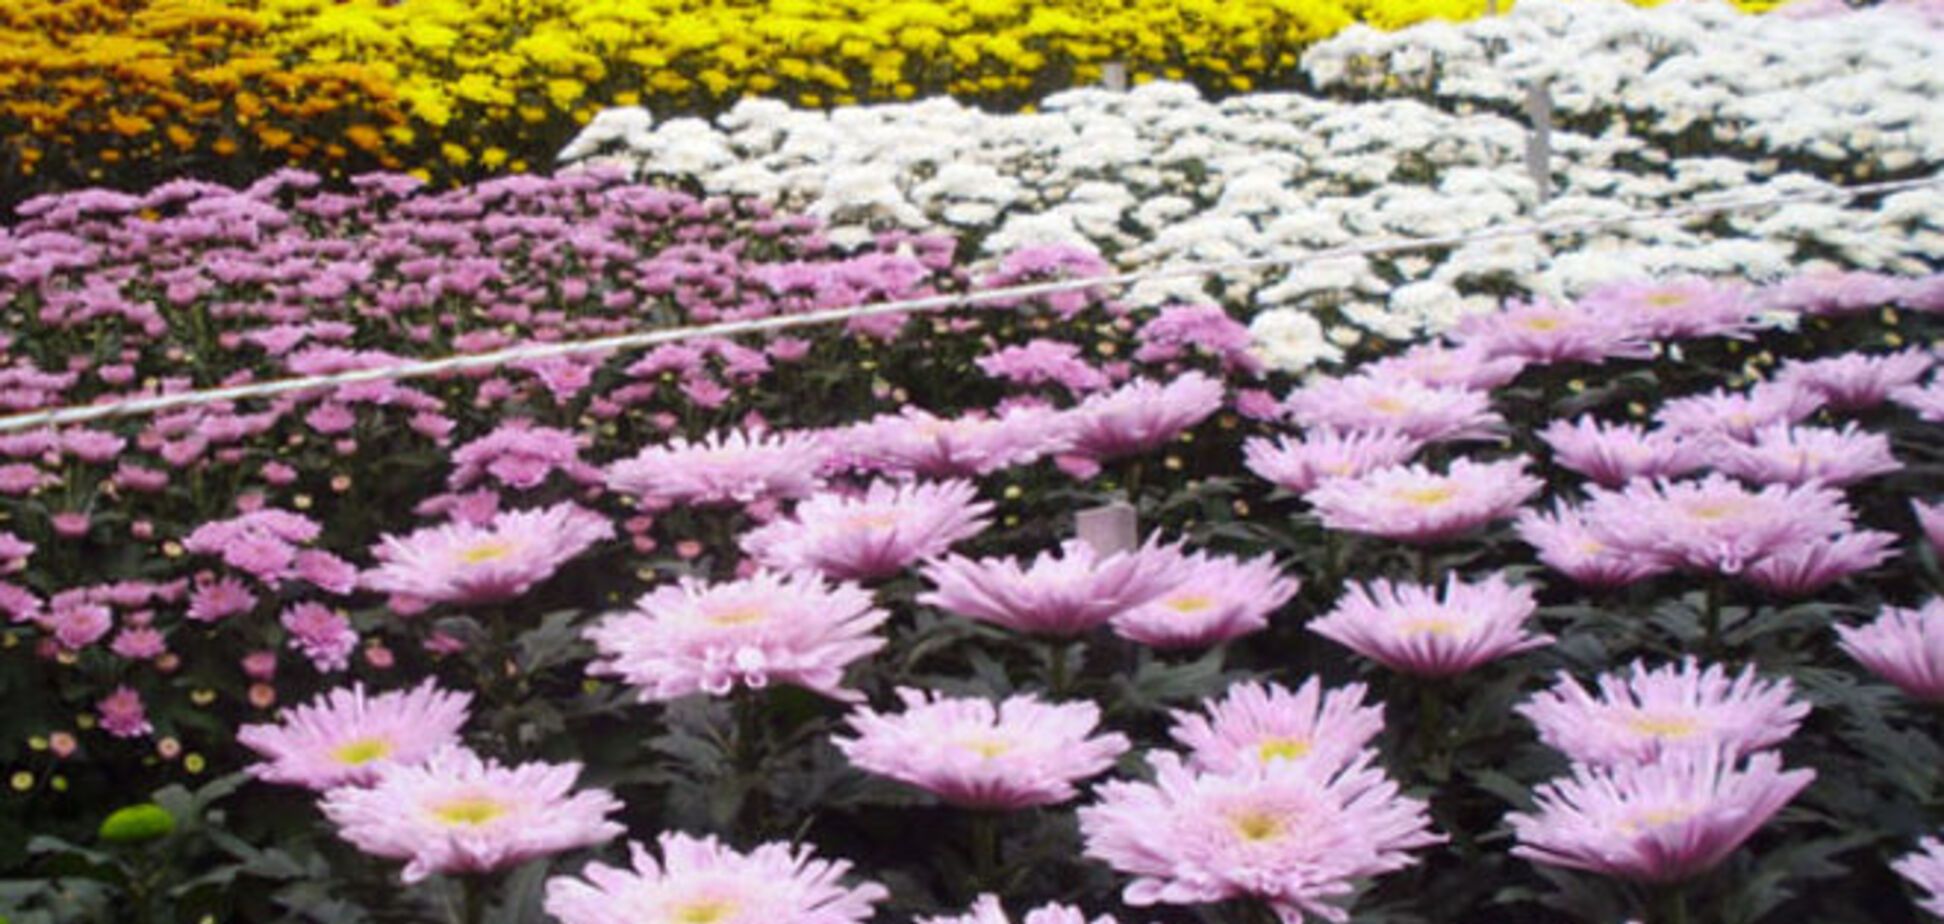 Месть с ароматом хризантем: Россия уничтожила сотни голландских цветов из-за трибунала по 'Боингу'